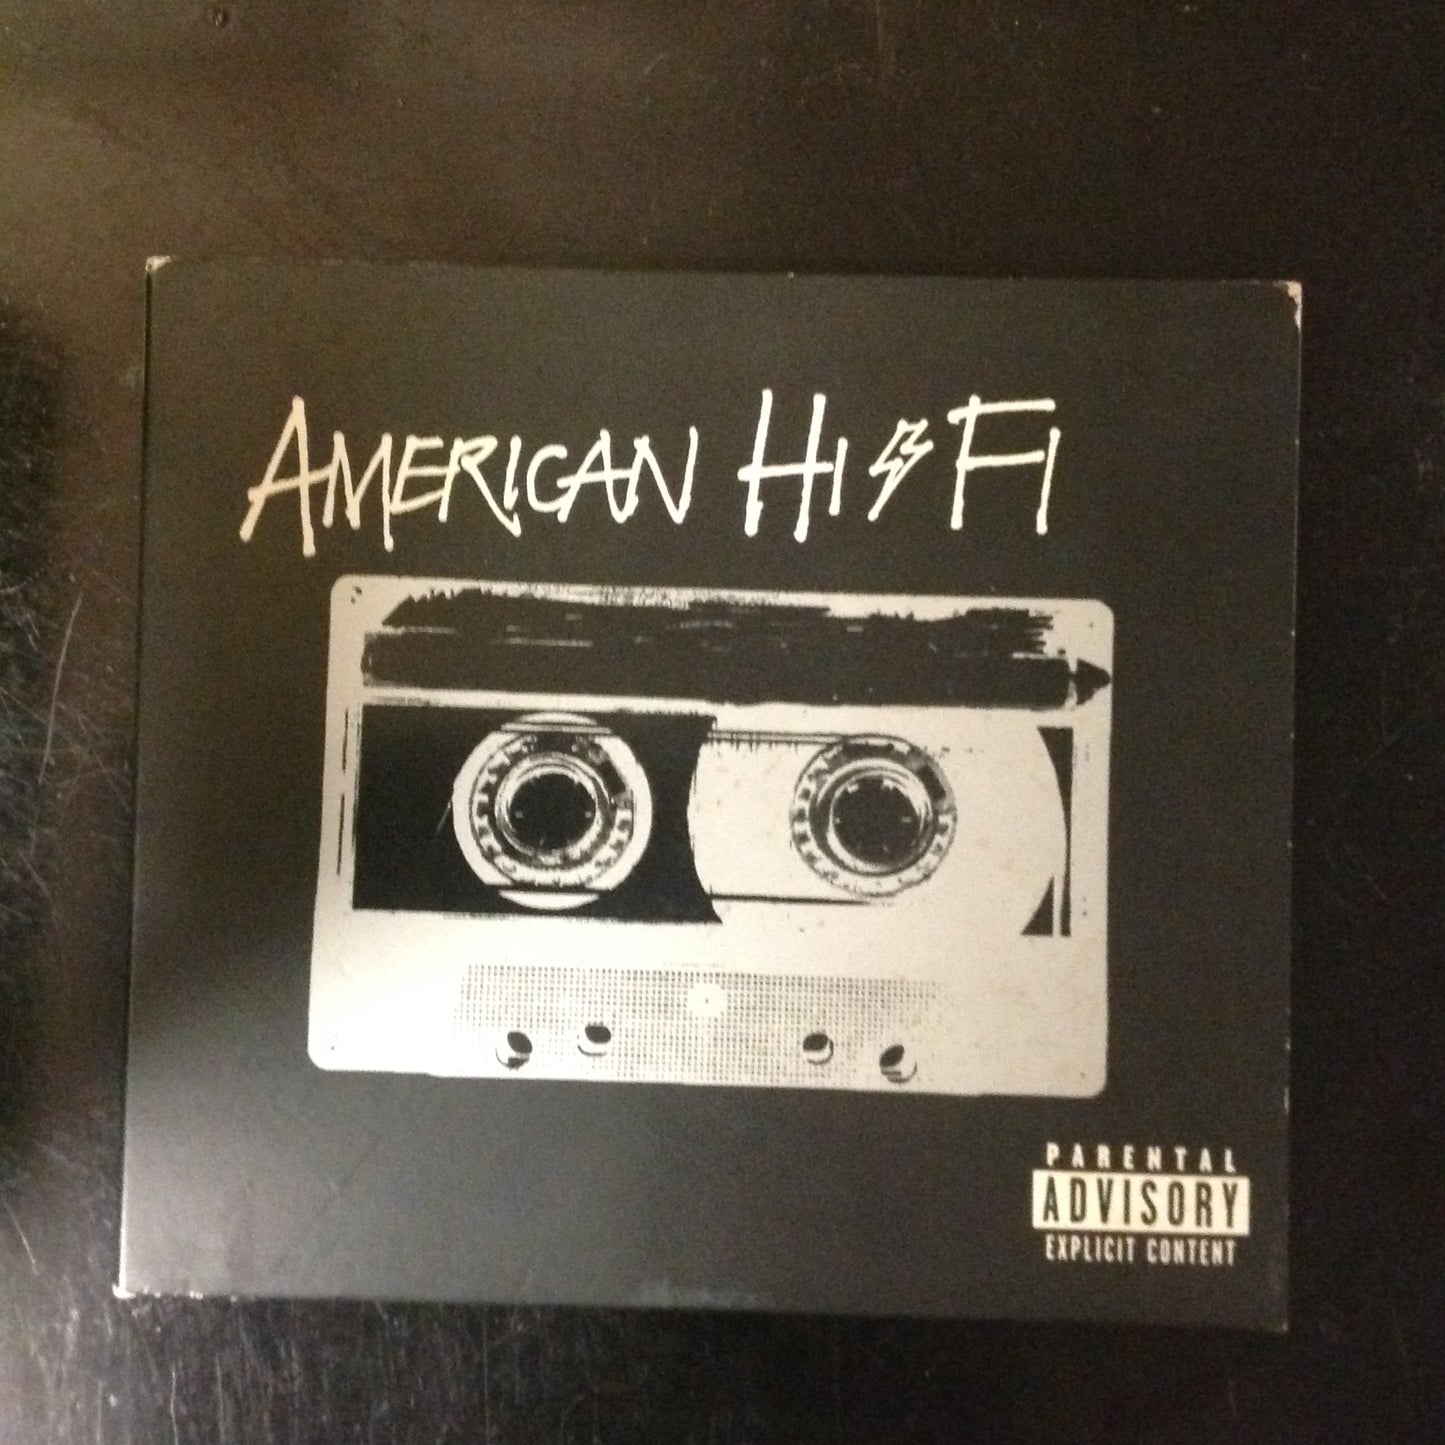 BARGAIN CD American Hi-Fi 314542871-2